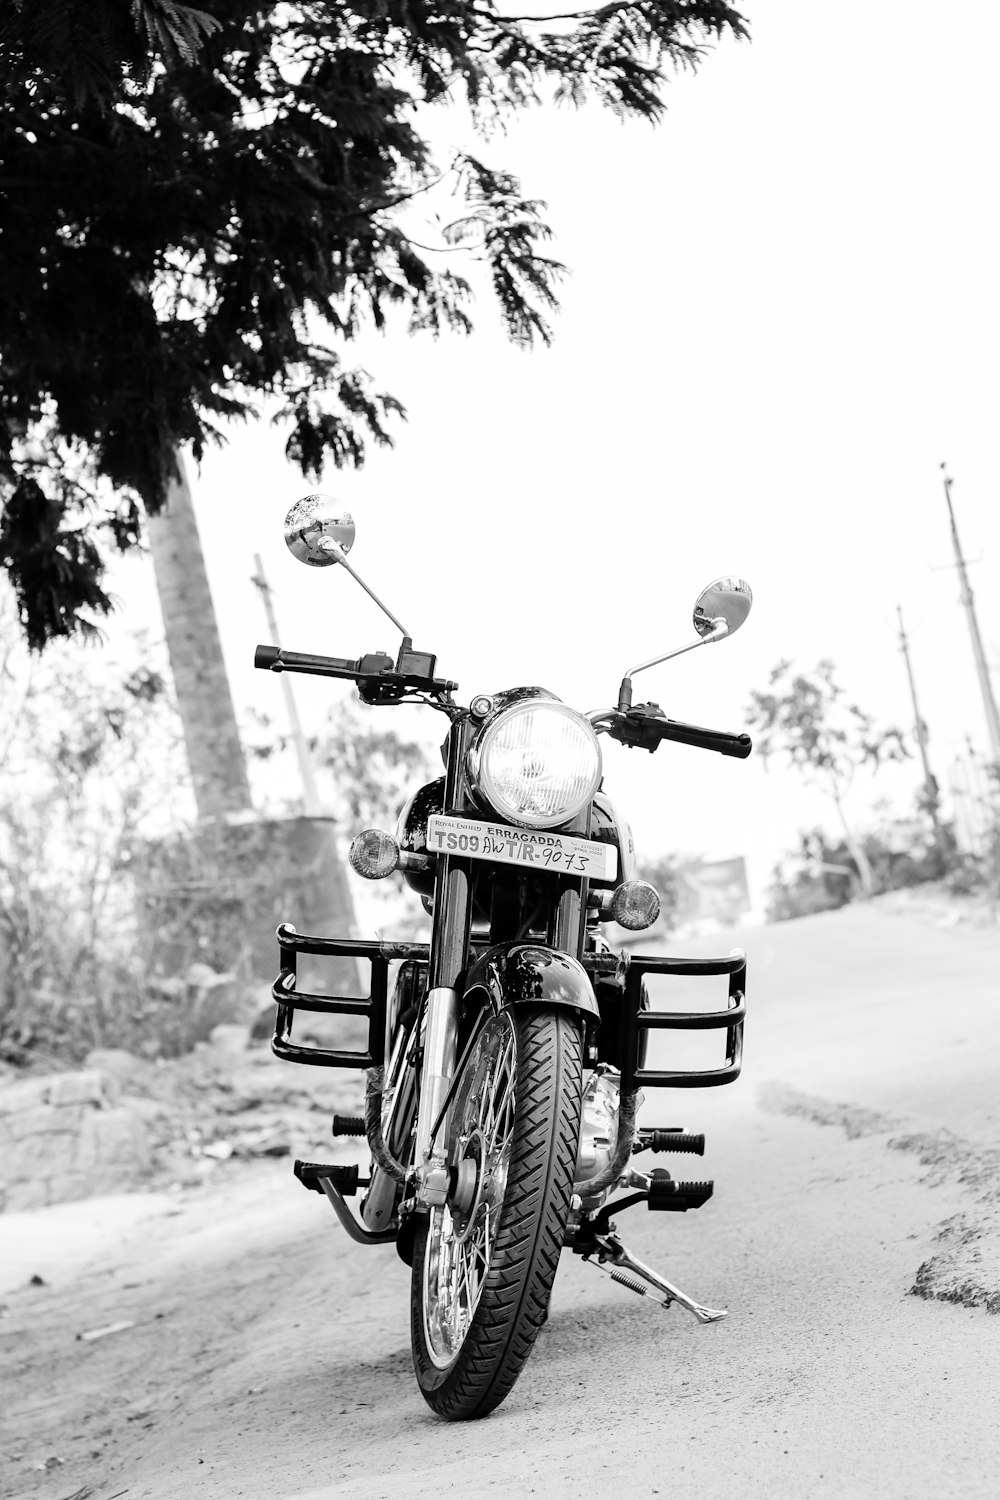 道路に駐車されたオートバイのグレースケール写真